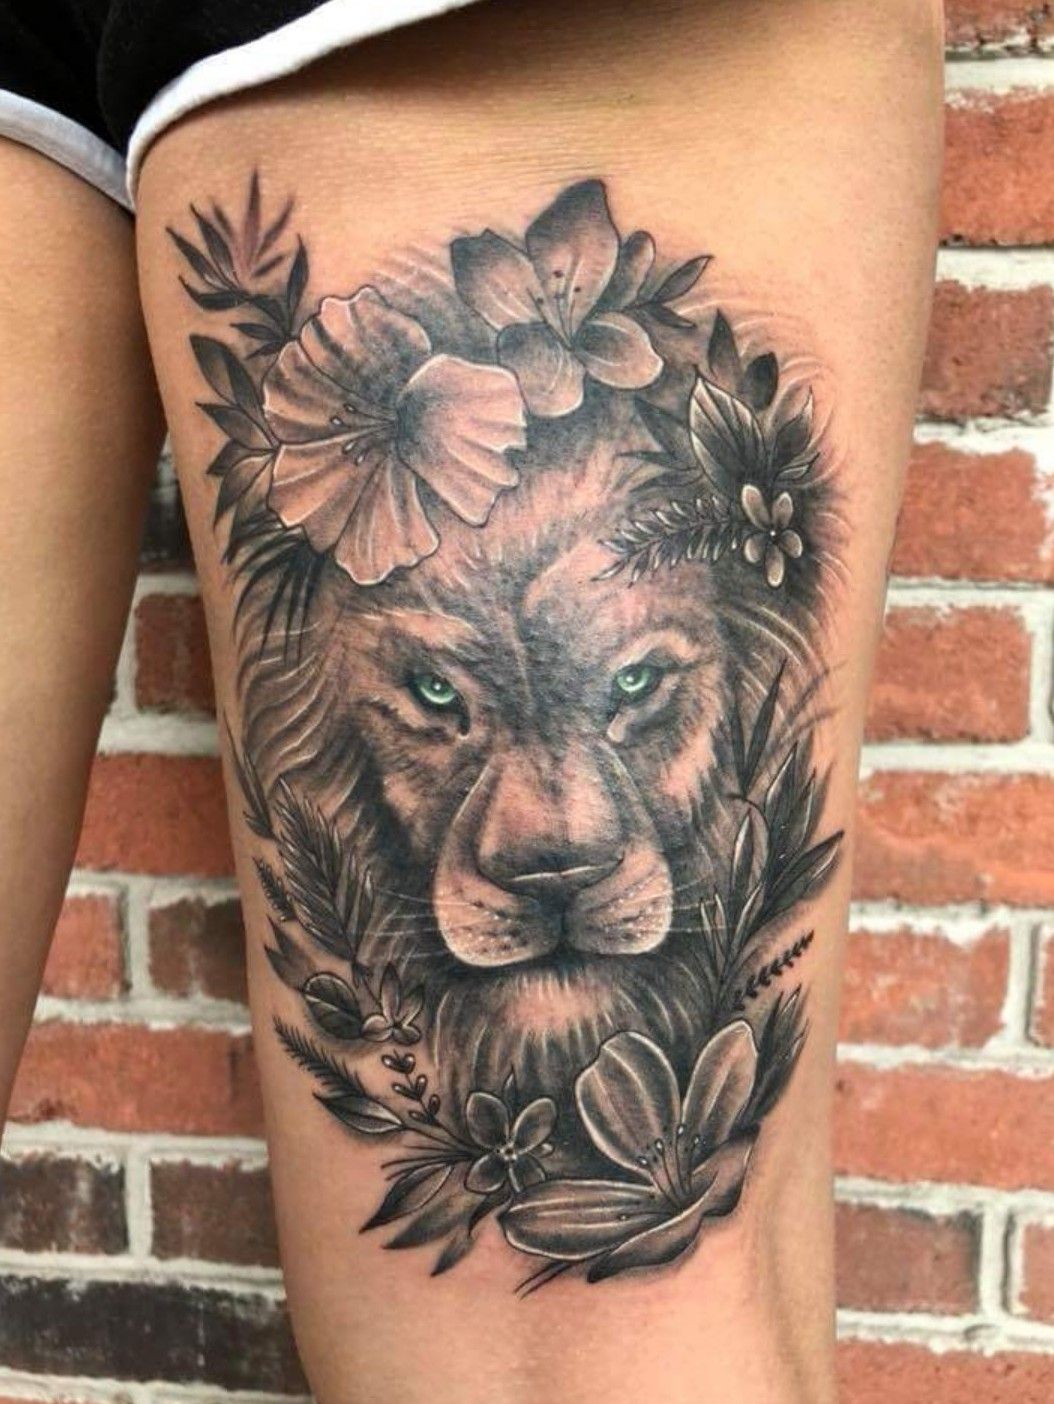 Joel Anderson Tattooer